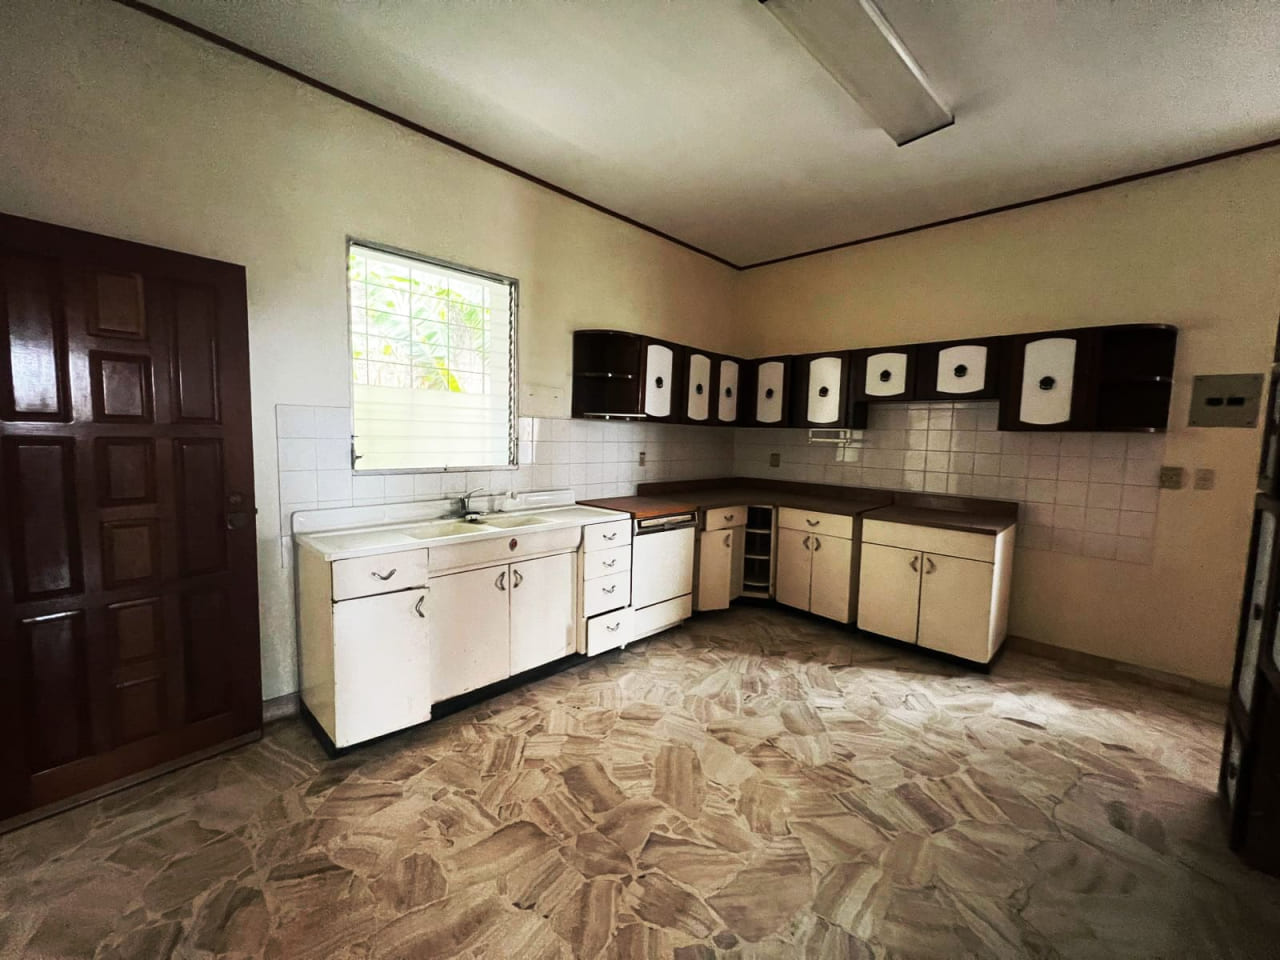 Cocina con muebles color blanco y negro, piso de cerámica, techo de tabla yeso, y ventana con vista a la res. Buena Vista.